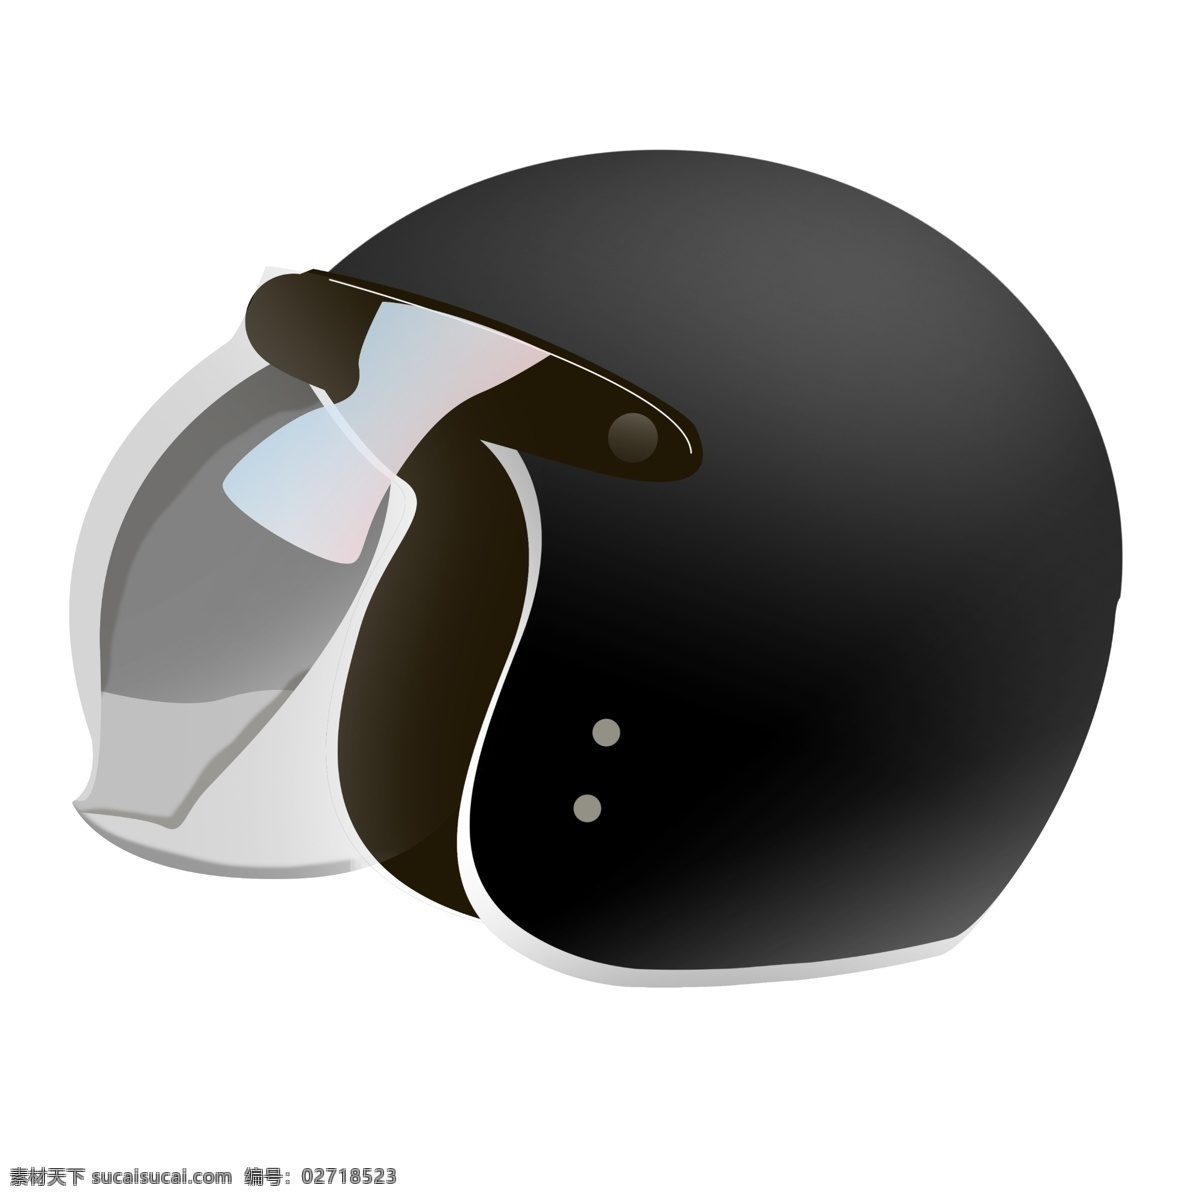 黑色 头盔 装饰 插画 黑色的头盔 漂亮的头盔 立体头盔 卡通头盔 头盔装饰 头盔插画 精美头盔